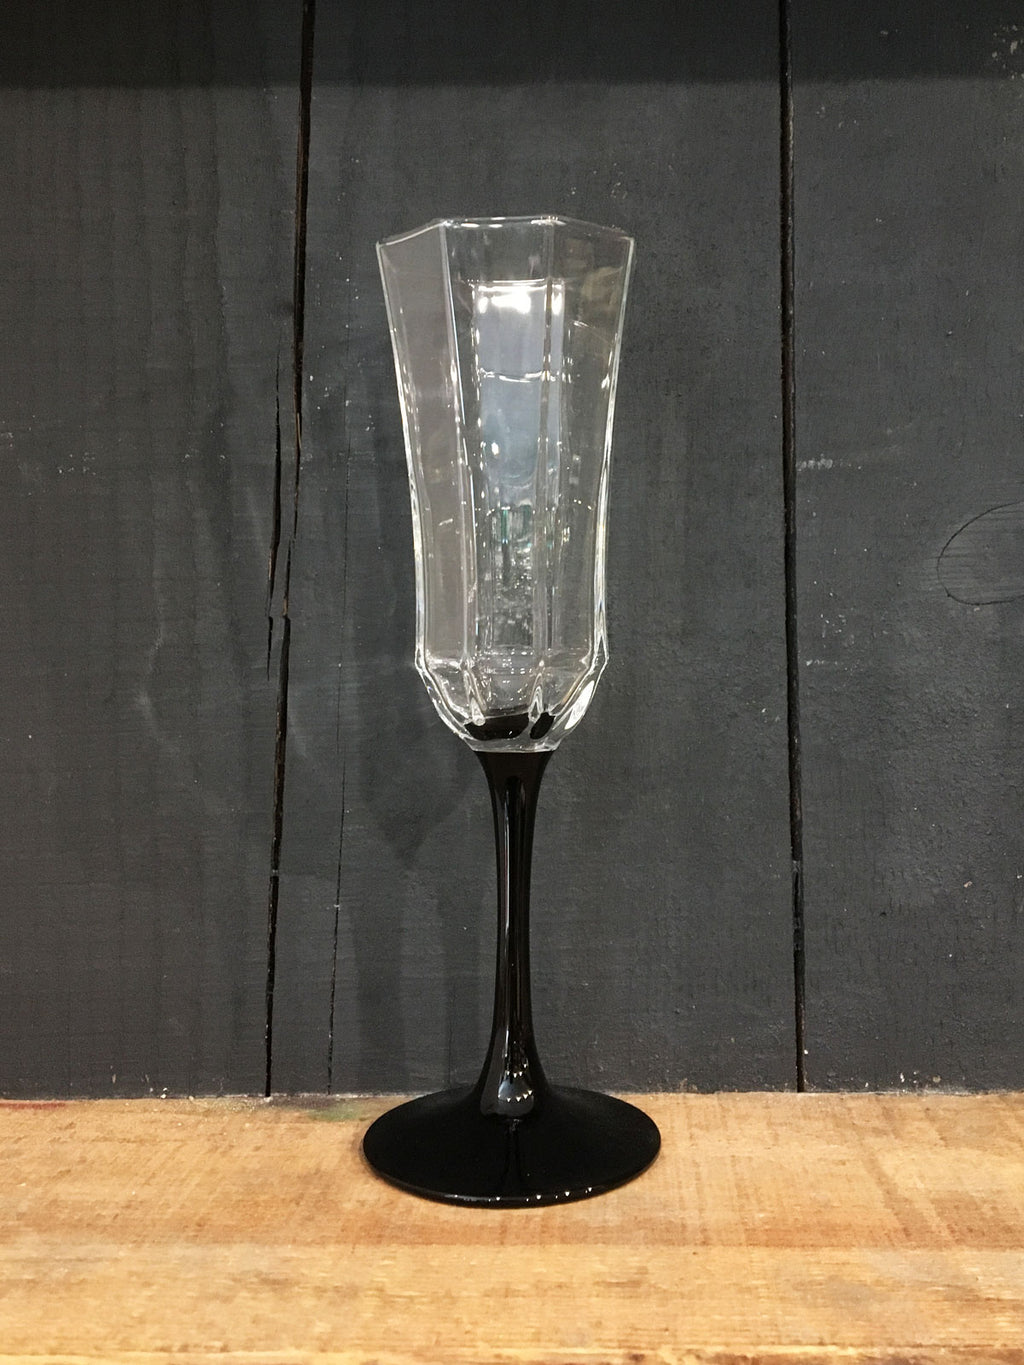 Vintage Octime Black Stem Flute Glass